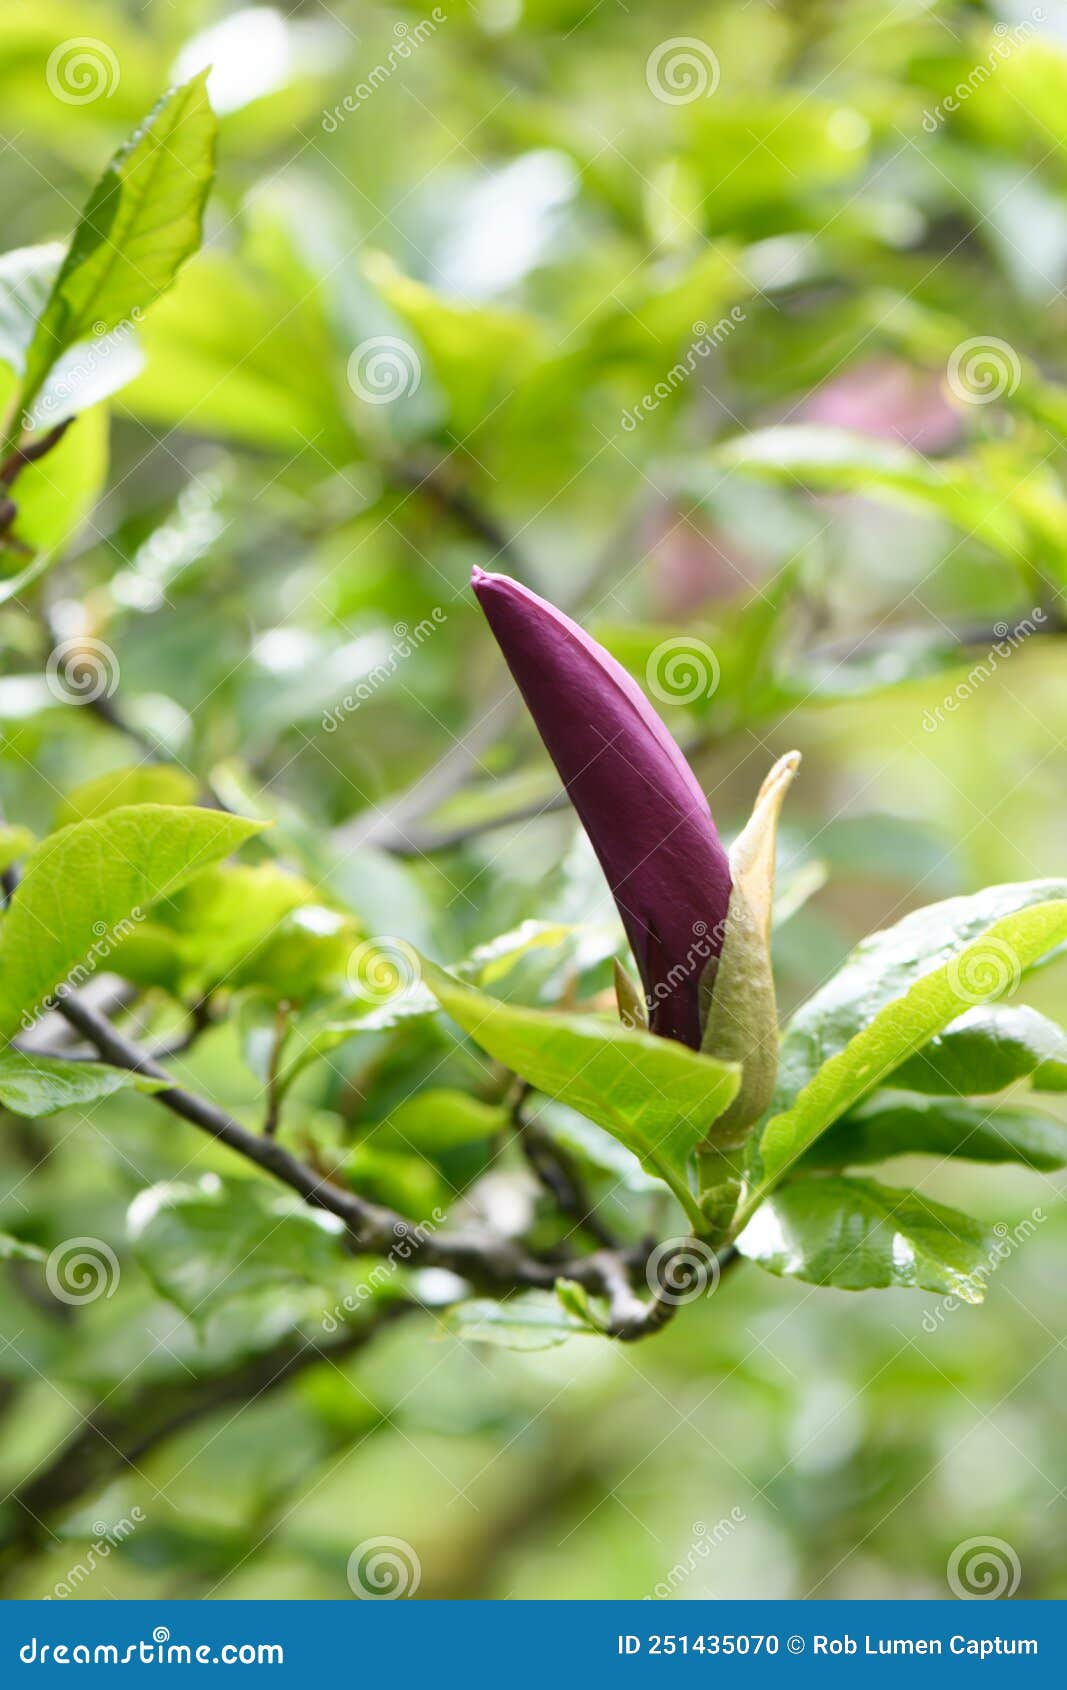 mulan magnolia liliiflora nigra, purple bud